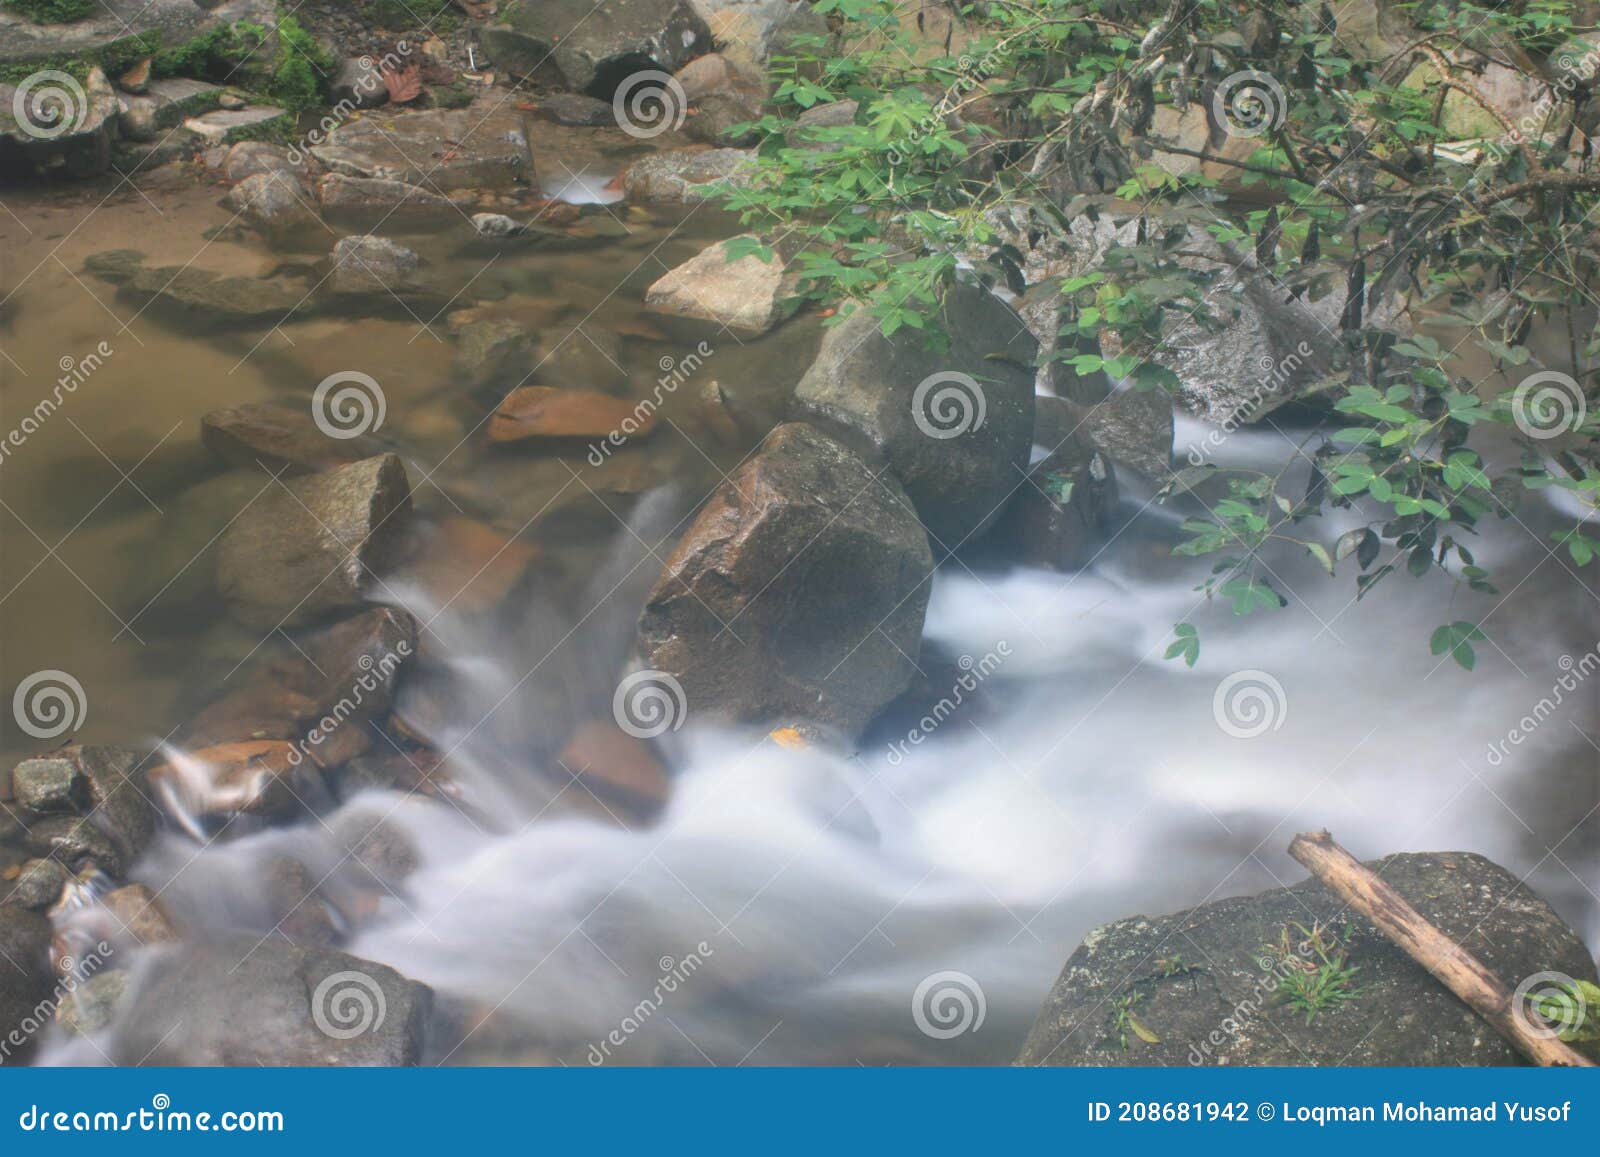 Waterfall sungai chalet gabai 10 Best